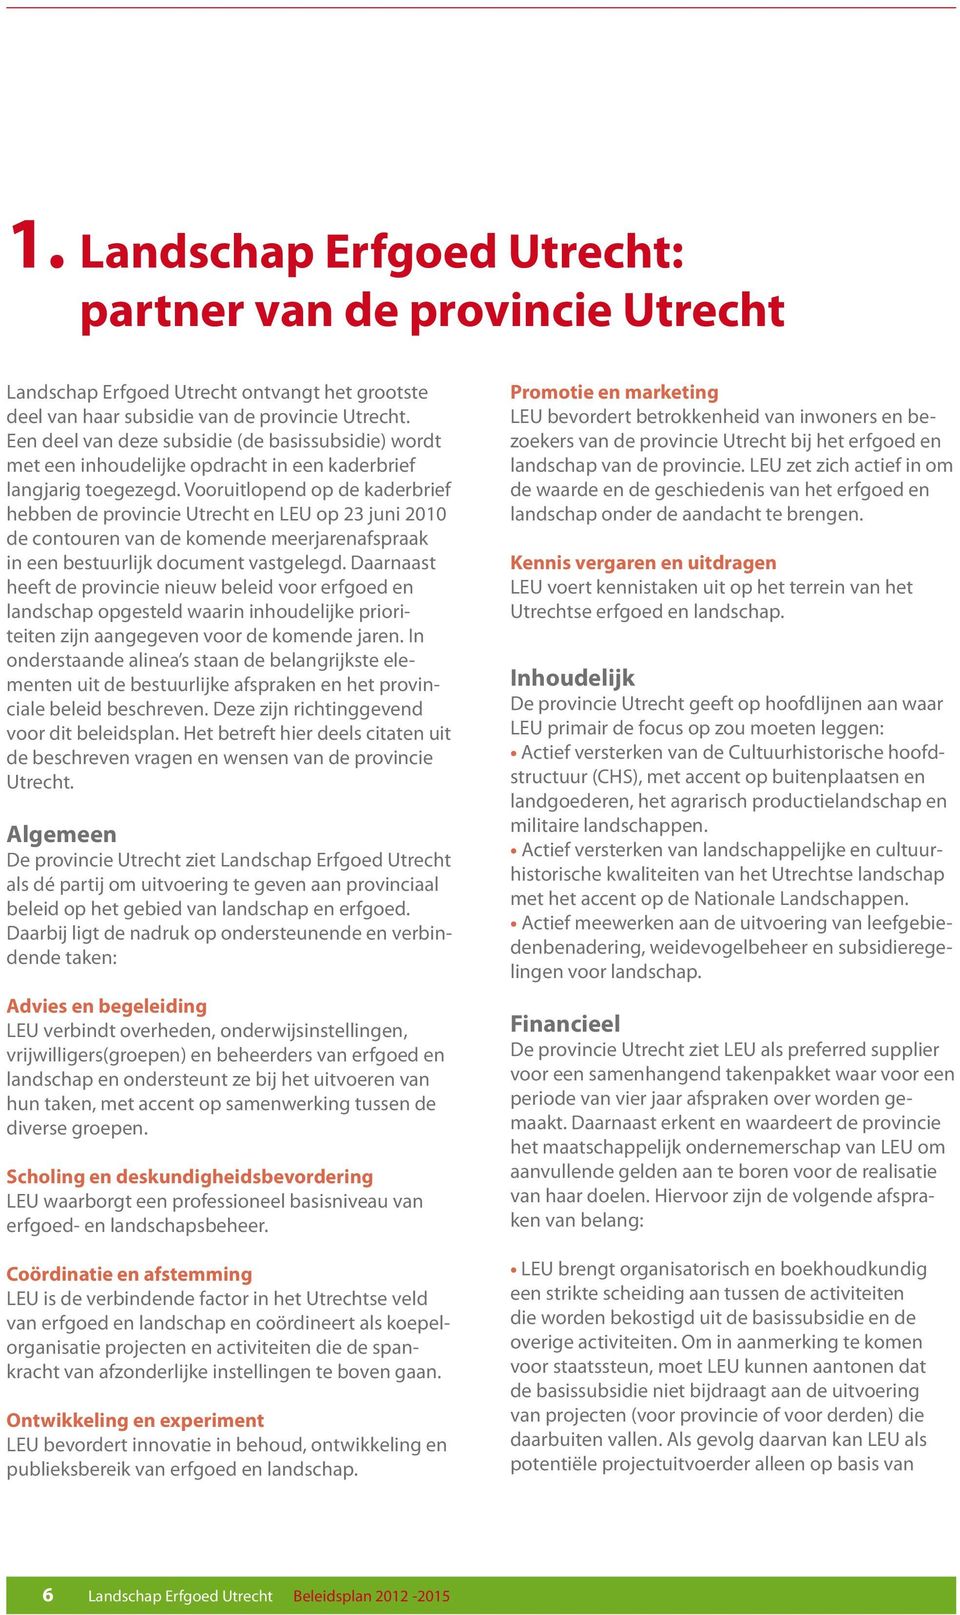 Vooruitlopend op de kaderbrief hebben de provincie Utrecht en LEU op 23 juni 2010 de contouren van de komende meerjarenafspraak in een bestuurlijk document vastgelegd.